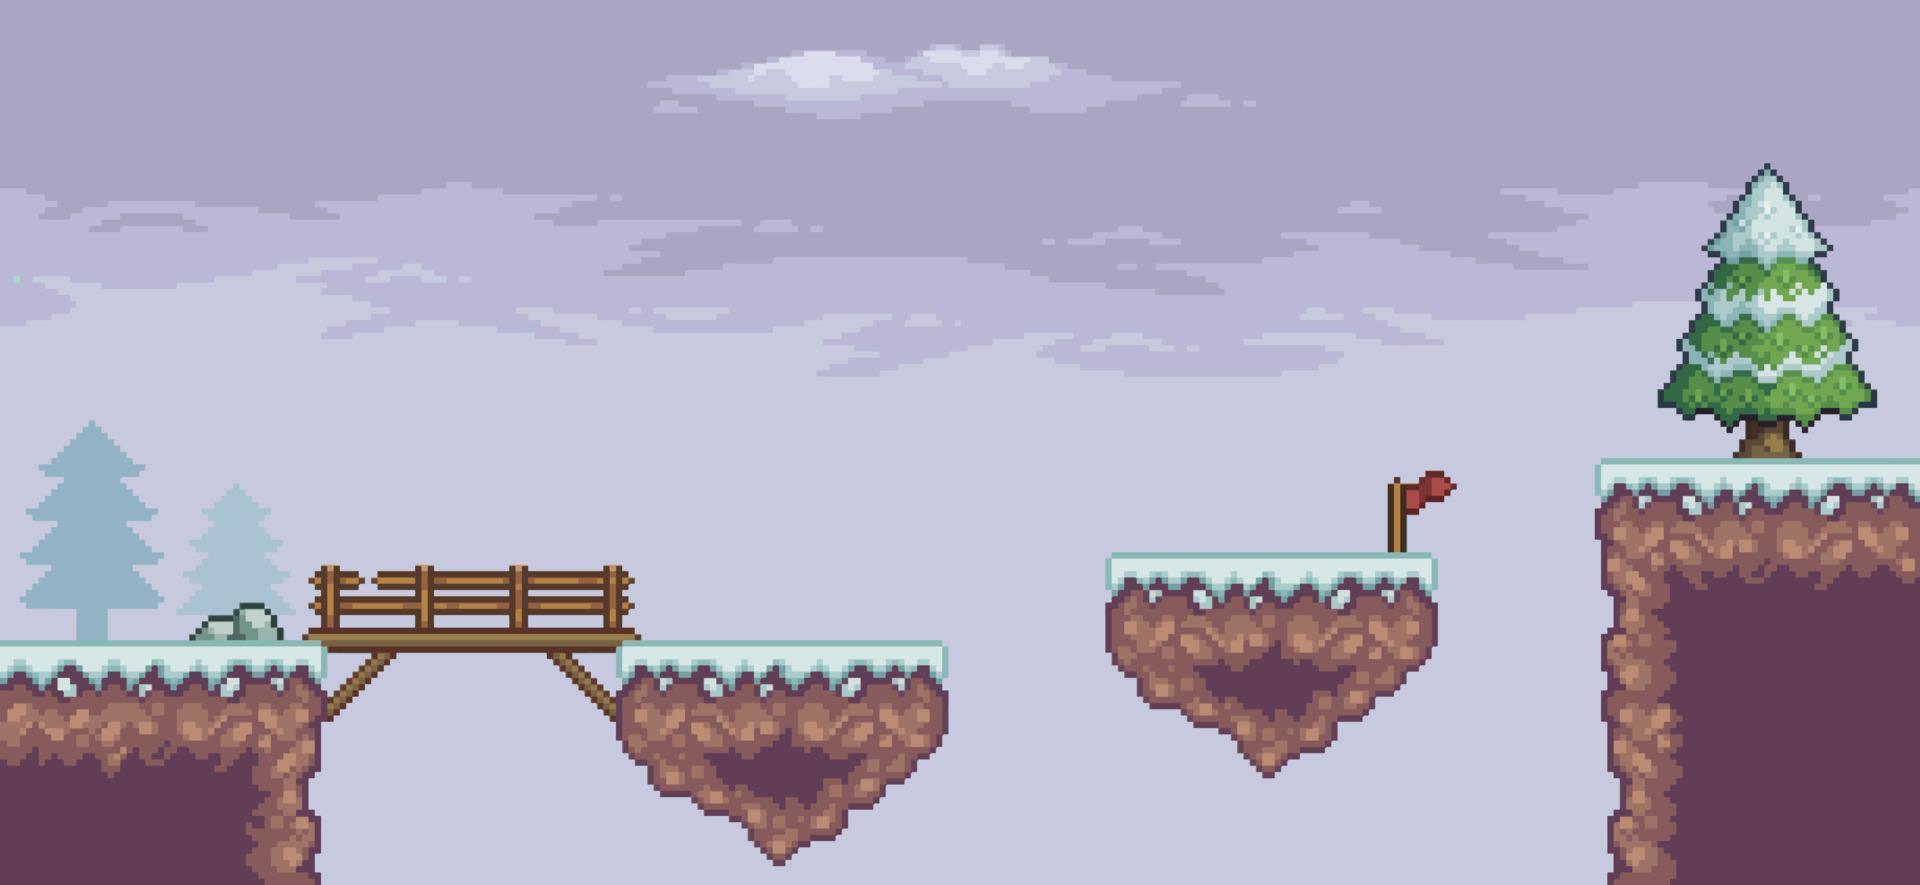 escena de juego de arte de píxeles en pinos de nieve, puente de madera, fondo de bandera de 8 bits vector